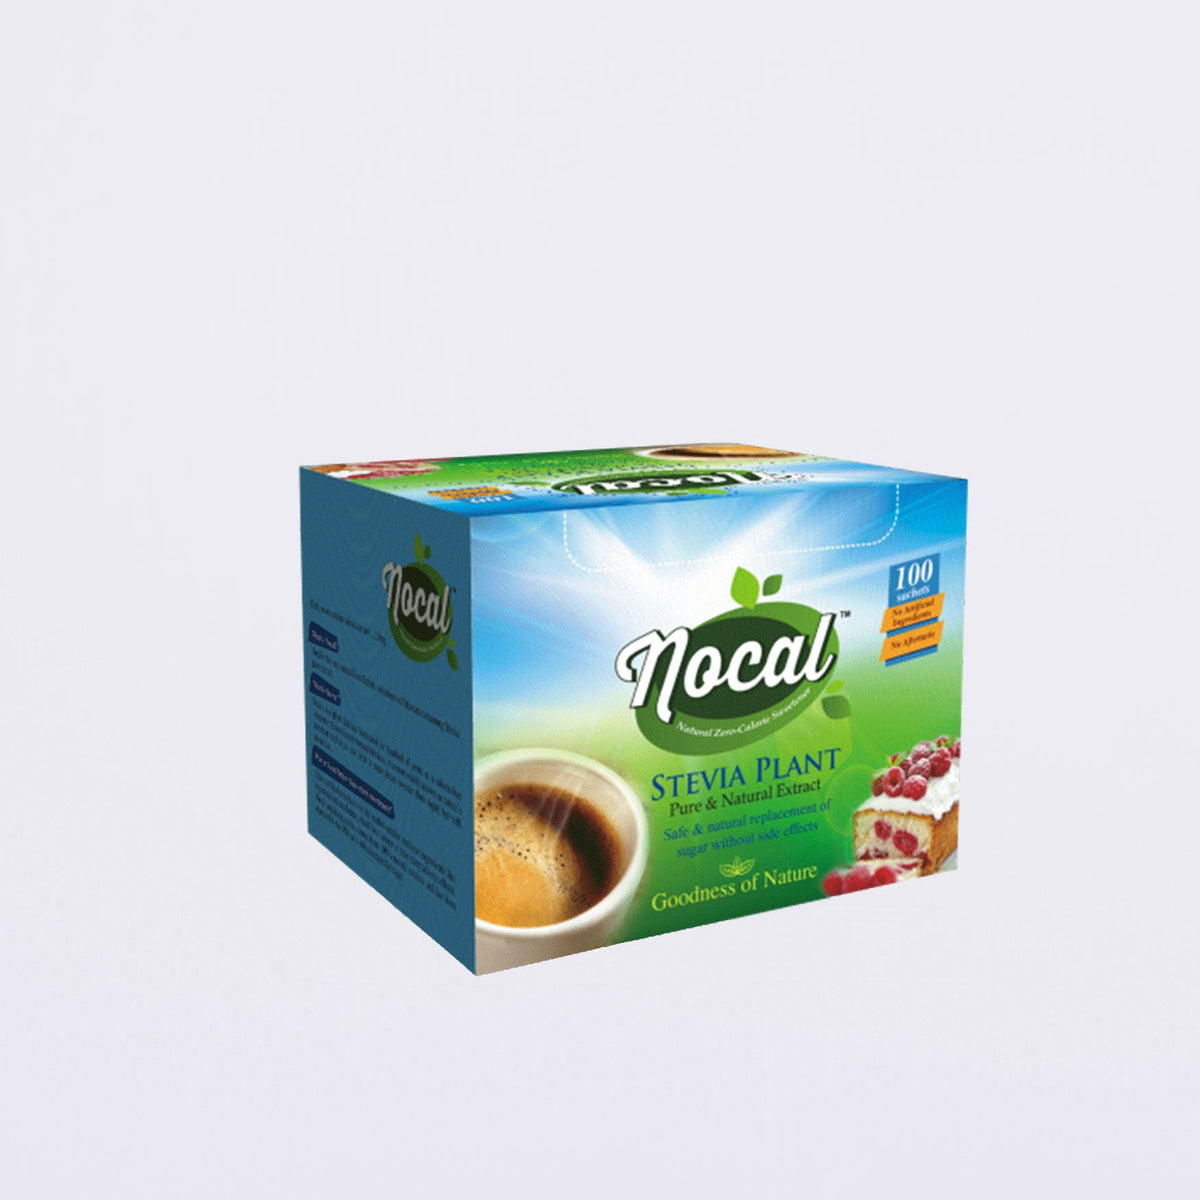 Nocal - Sachet Box - Novamed Healthcare